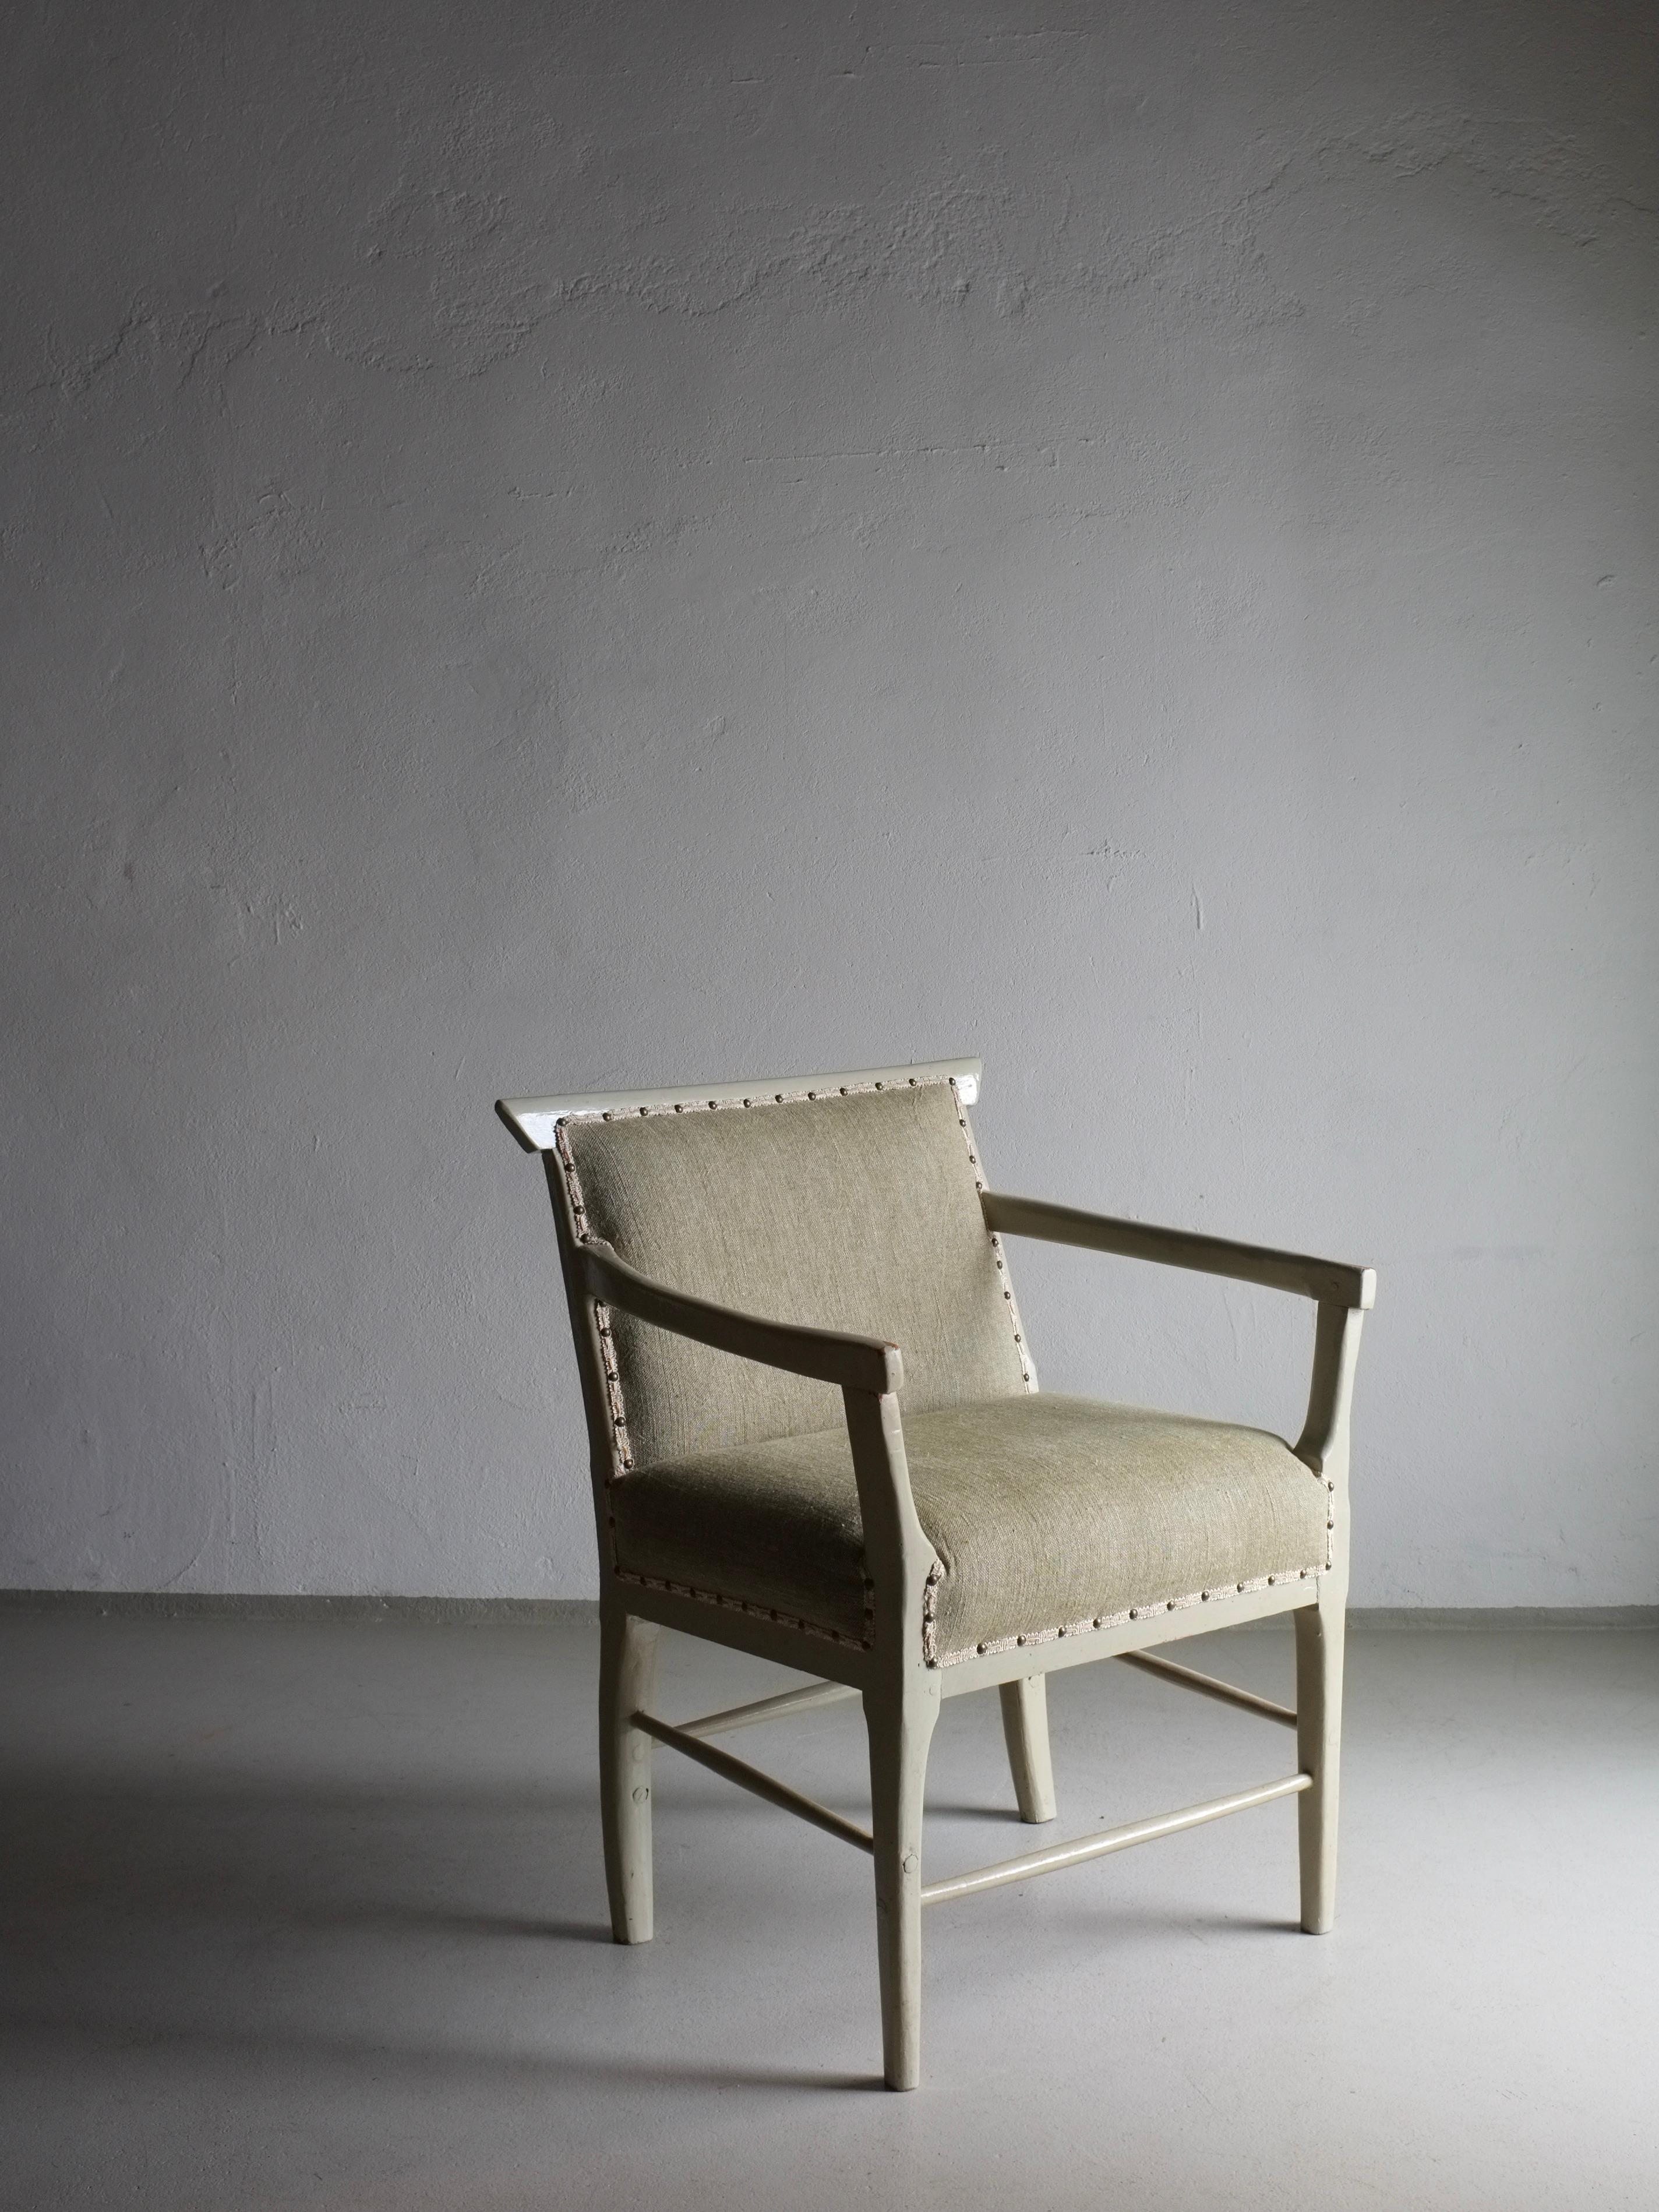 Fauteuil vintage suédois peint en vert-gris avec un nouveau revêtement en lin lavé vert olive. Le ruban de décoration a été laissé d'origine pour préserver le caractère de la chaise.